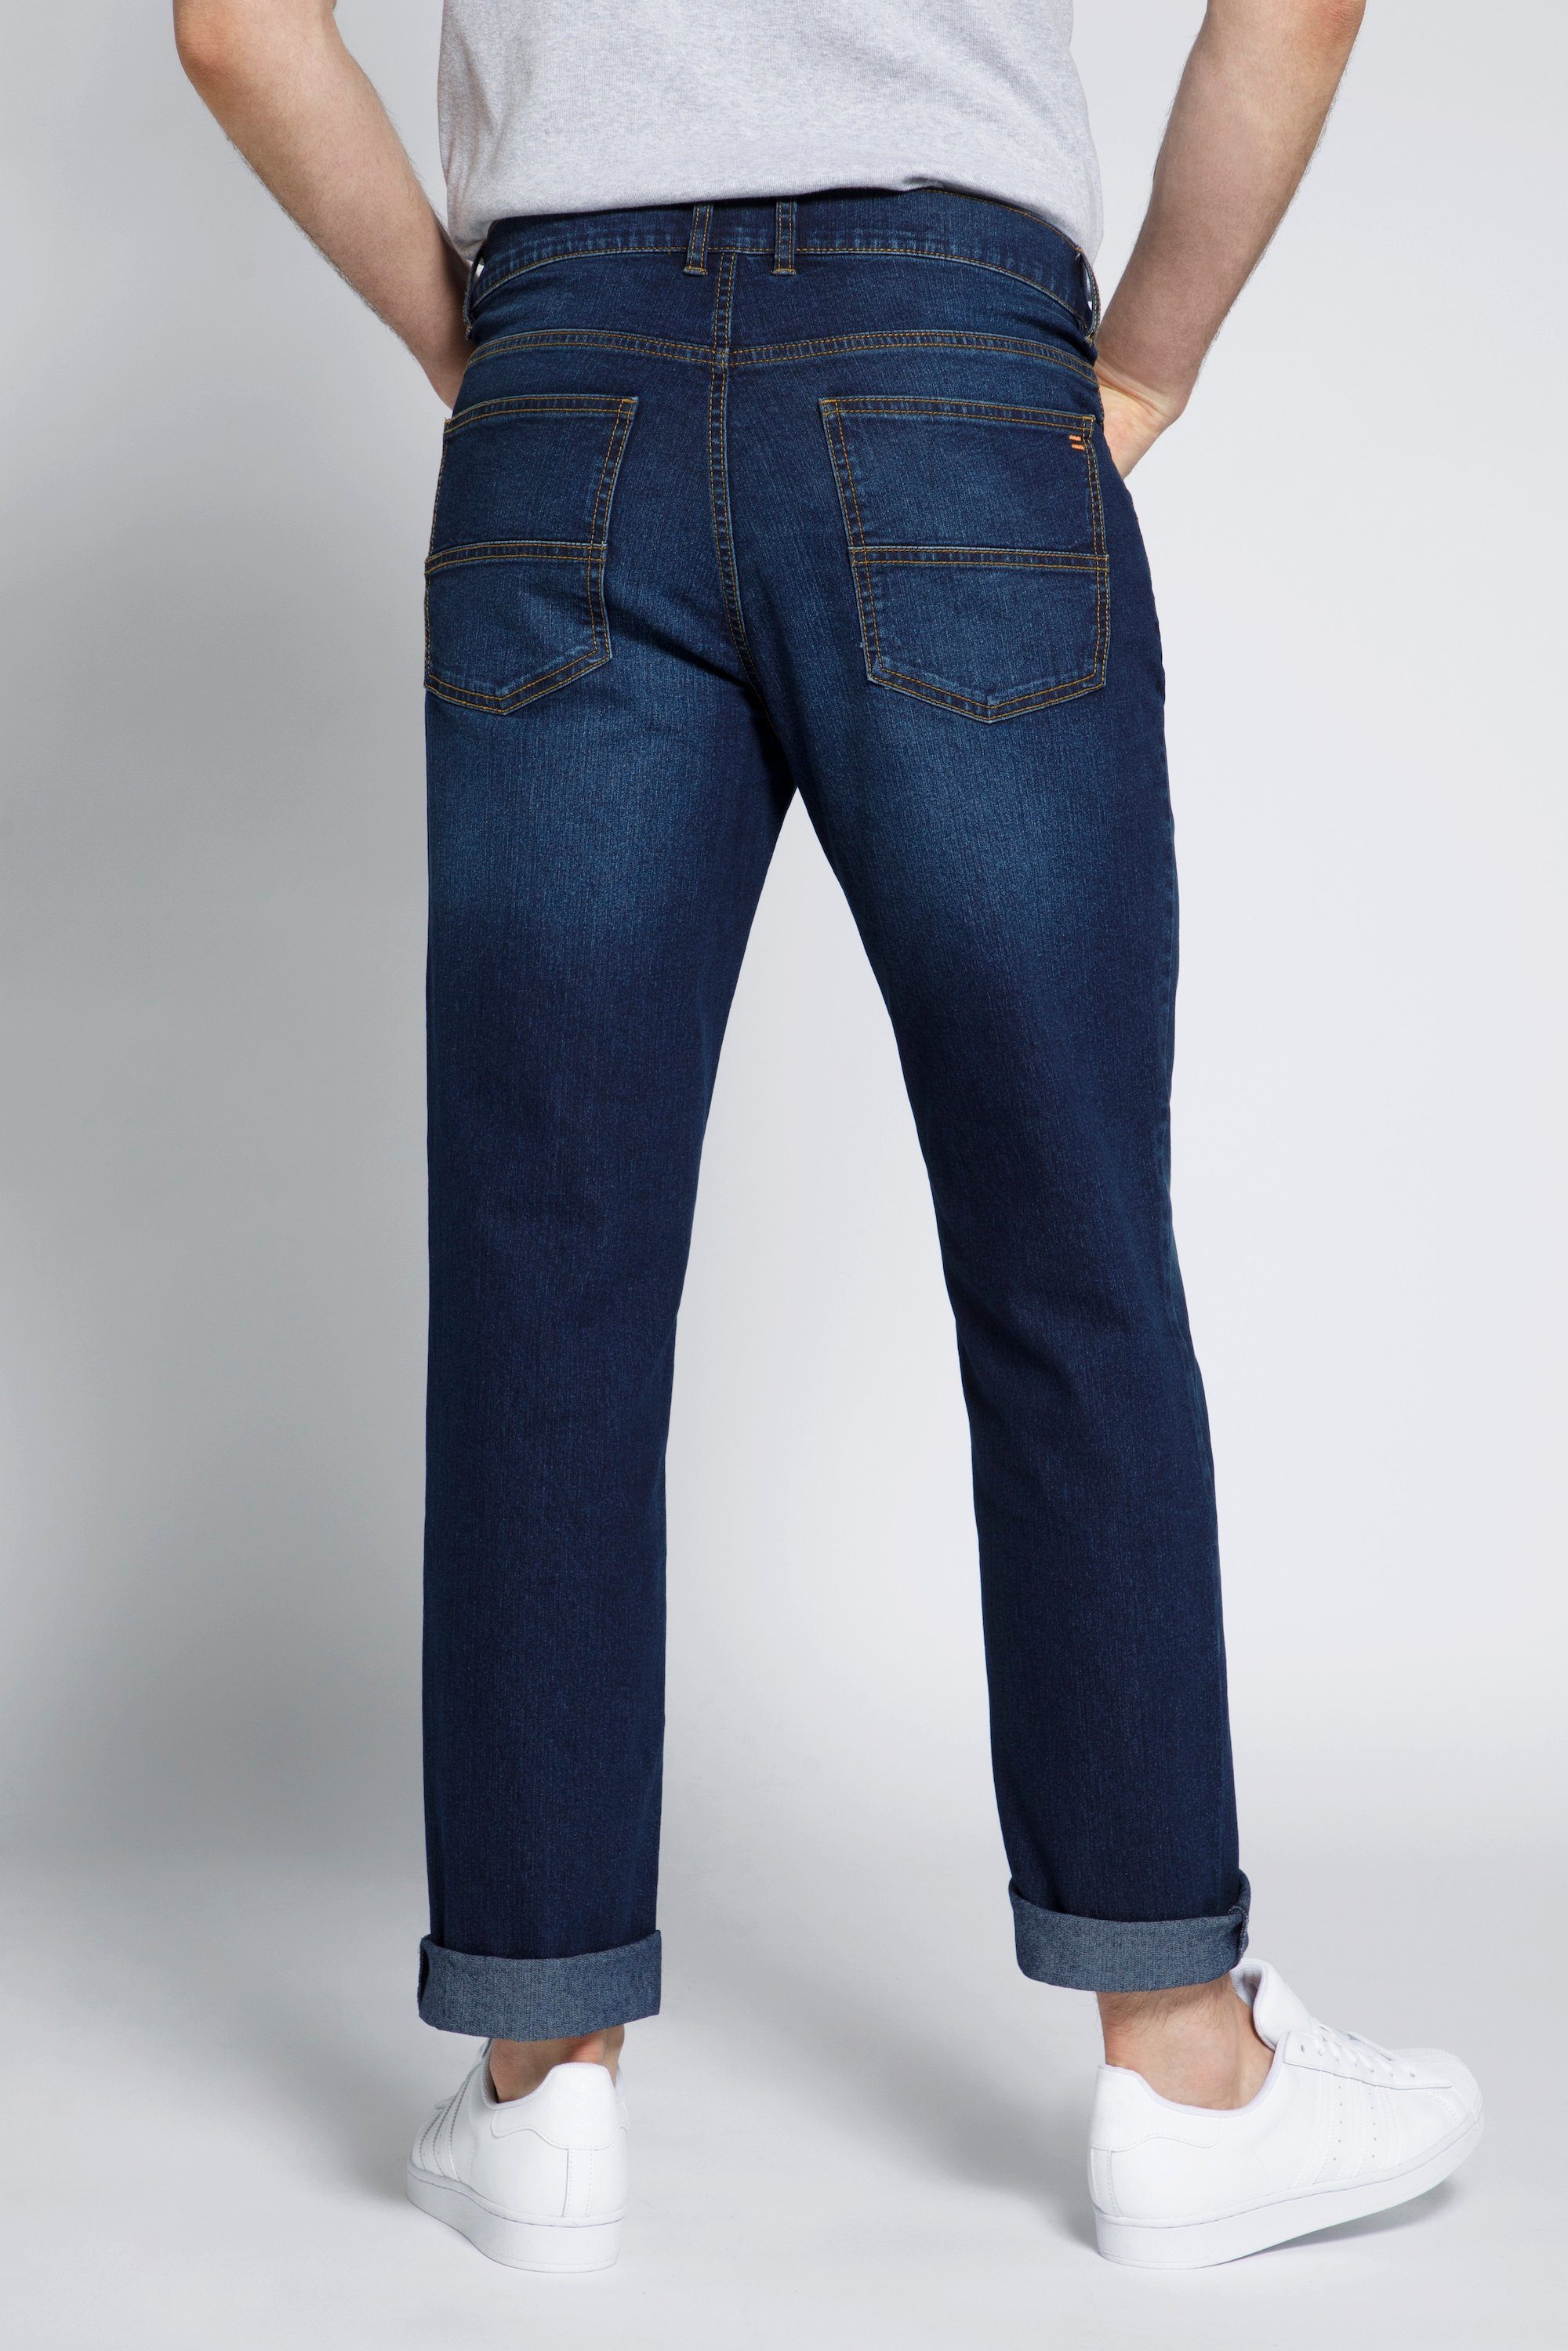 Pocket Regular Bauch STHUGE 5 Jeans STHUGE blue Fit denim dark 5-Pocket-Jeans Fit